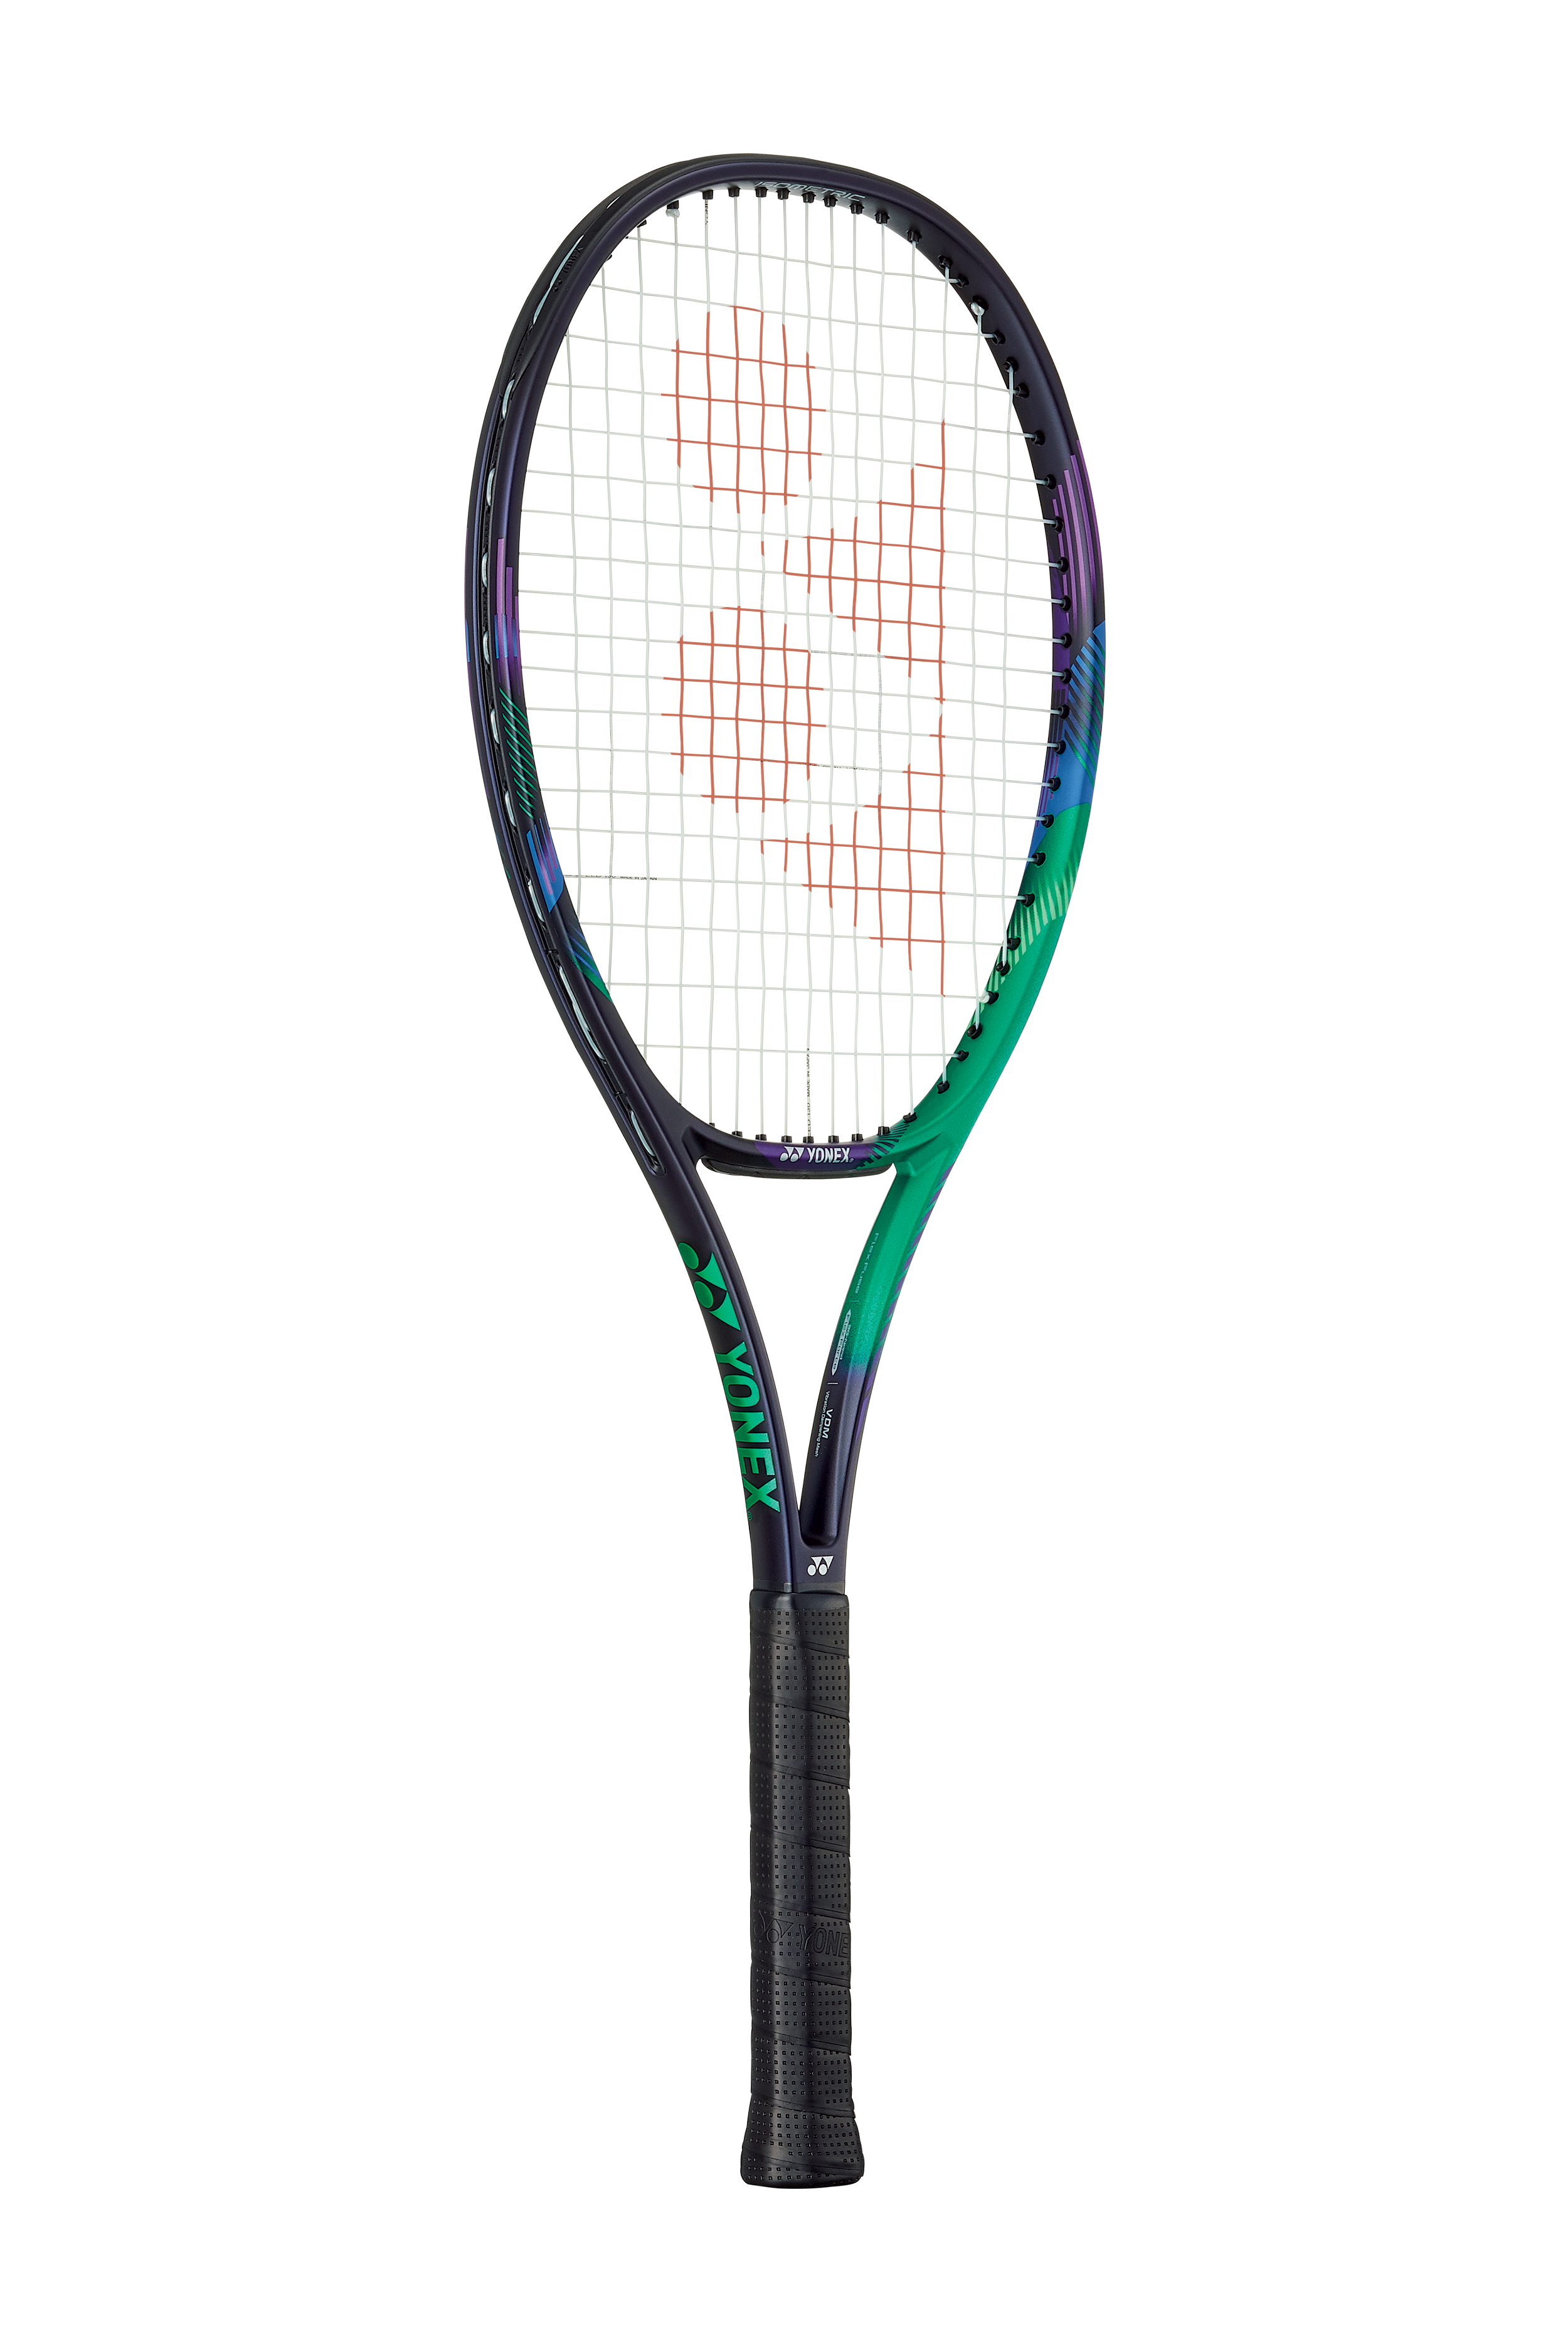 Yonex VCore Pro 100 Unstrung Tennis Racket - G300 [Green/Purple] 2021